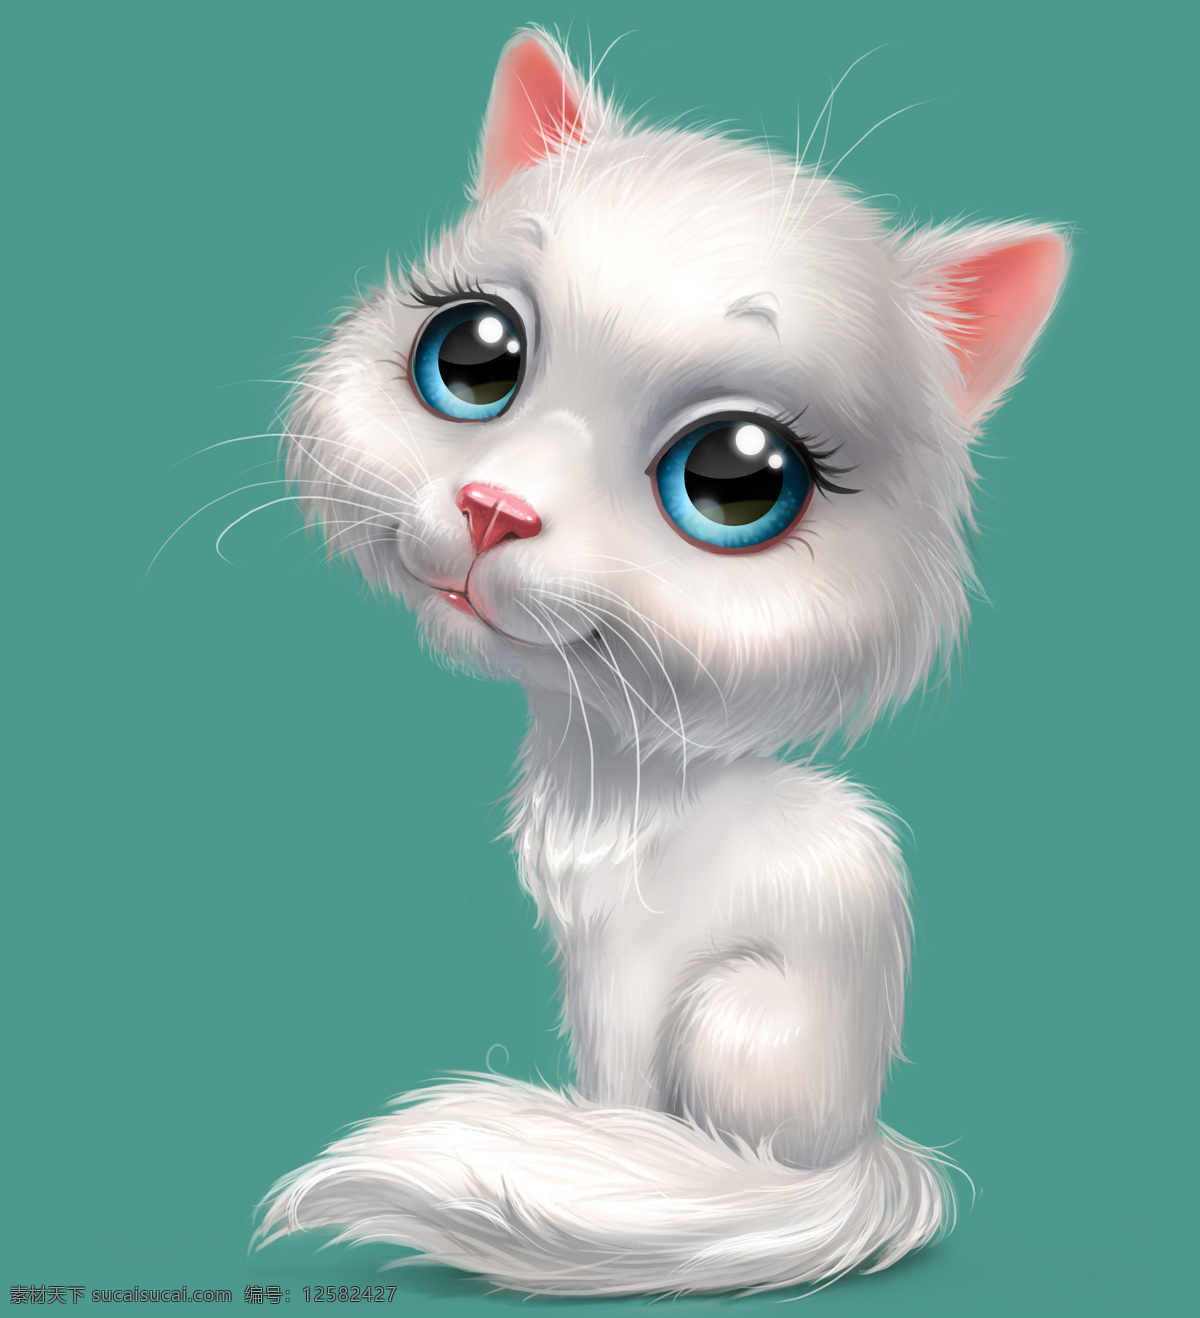 可爱 白色 猫咪 插画 白猫 卡通猫咪 小猫 卡通动物插画 可爱动物 卡通动物漫画 动物插图 其他类别 生活百科 青色 天蓝色